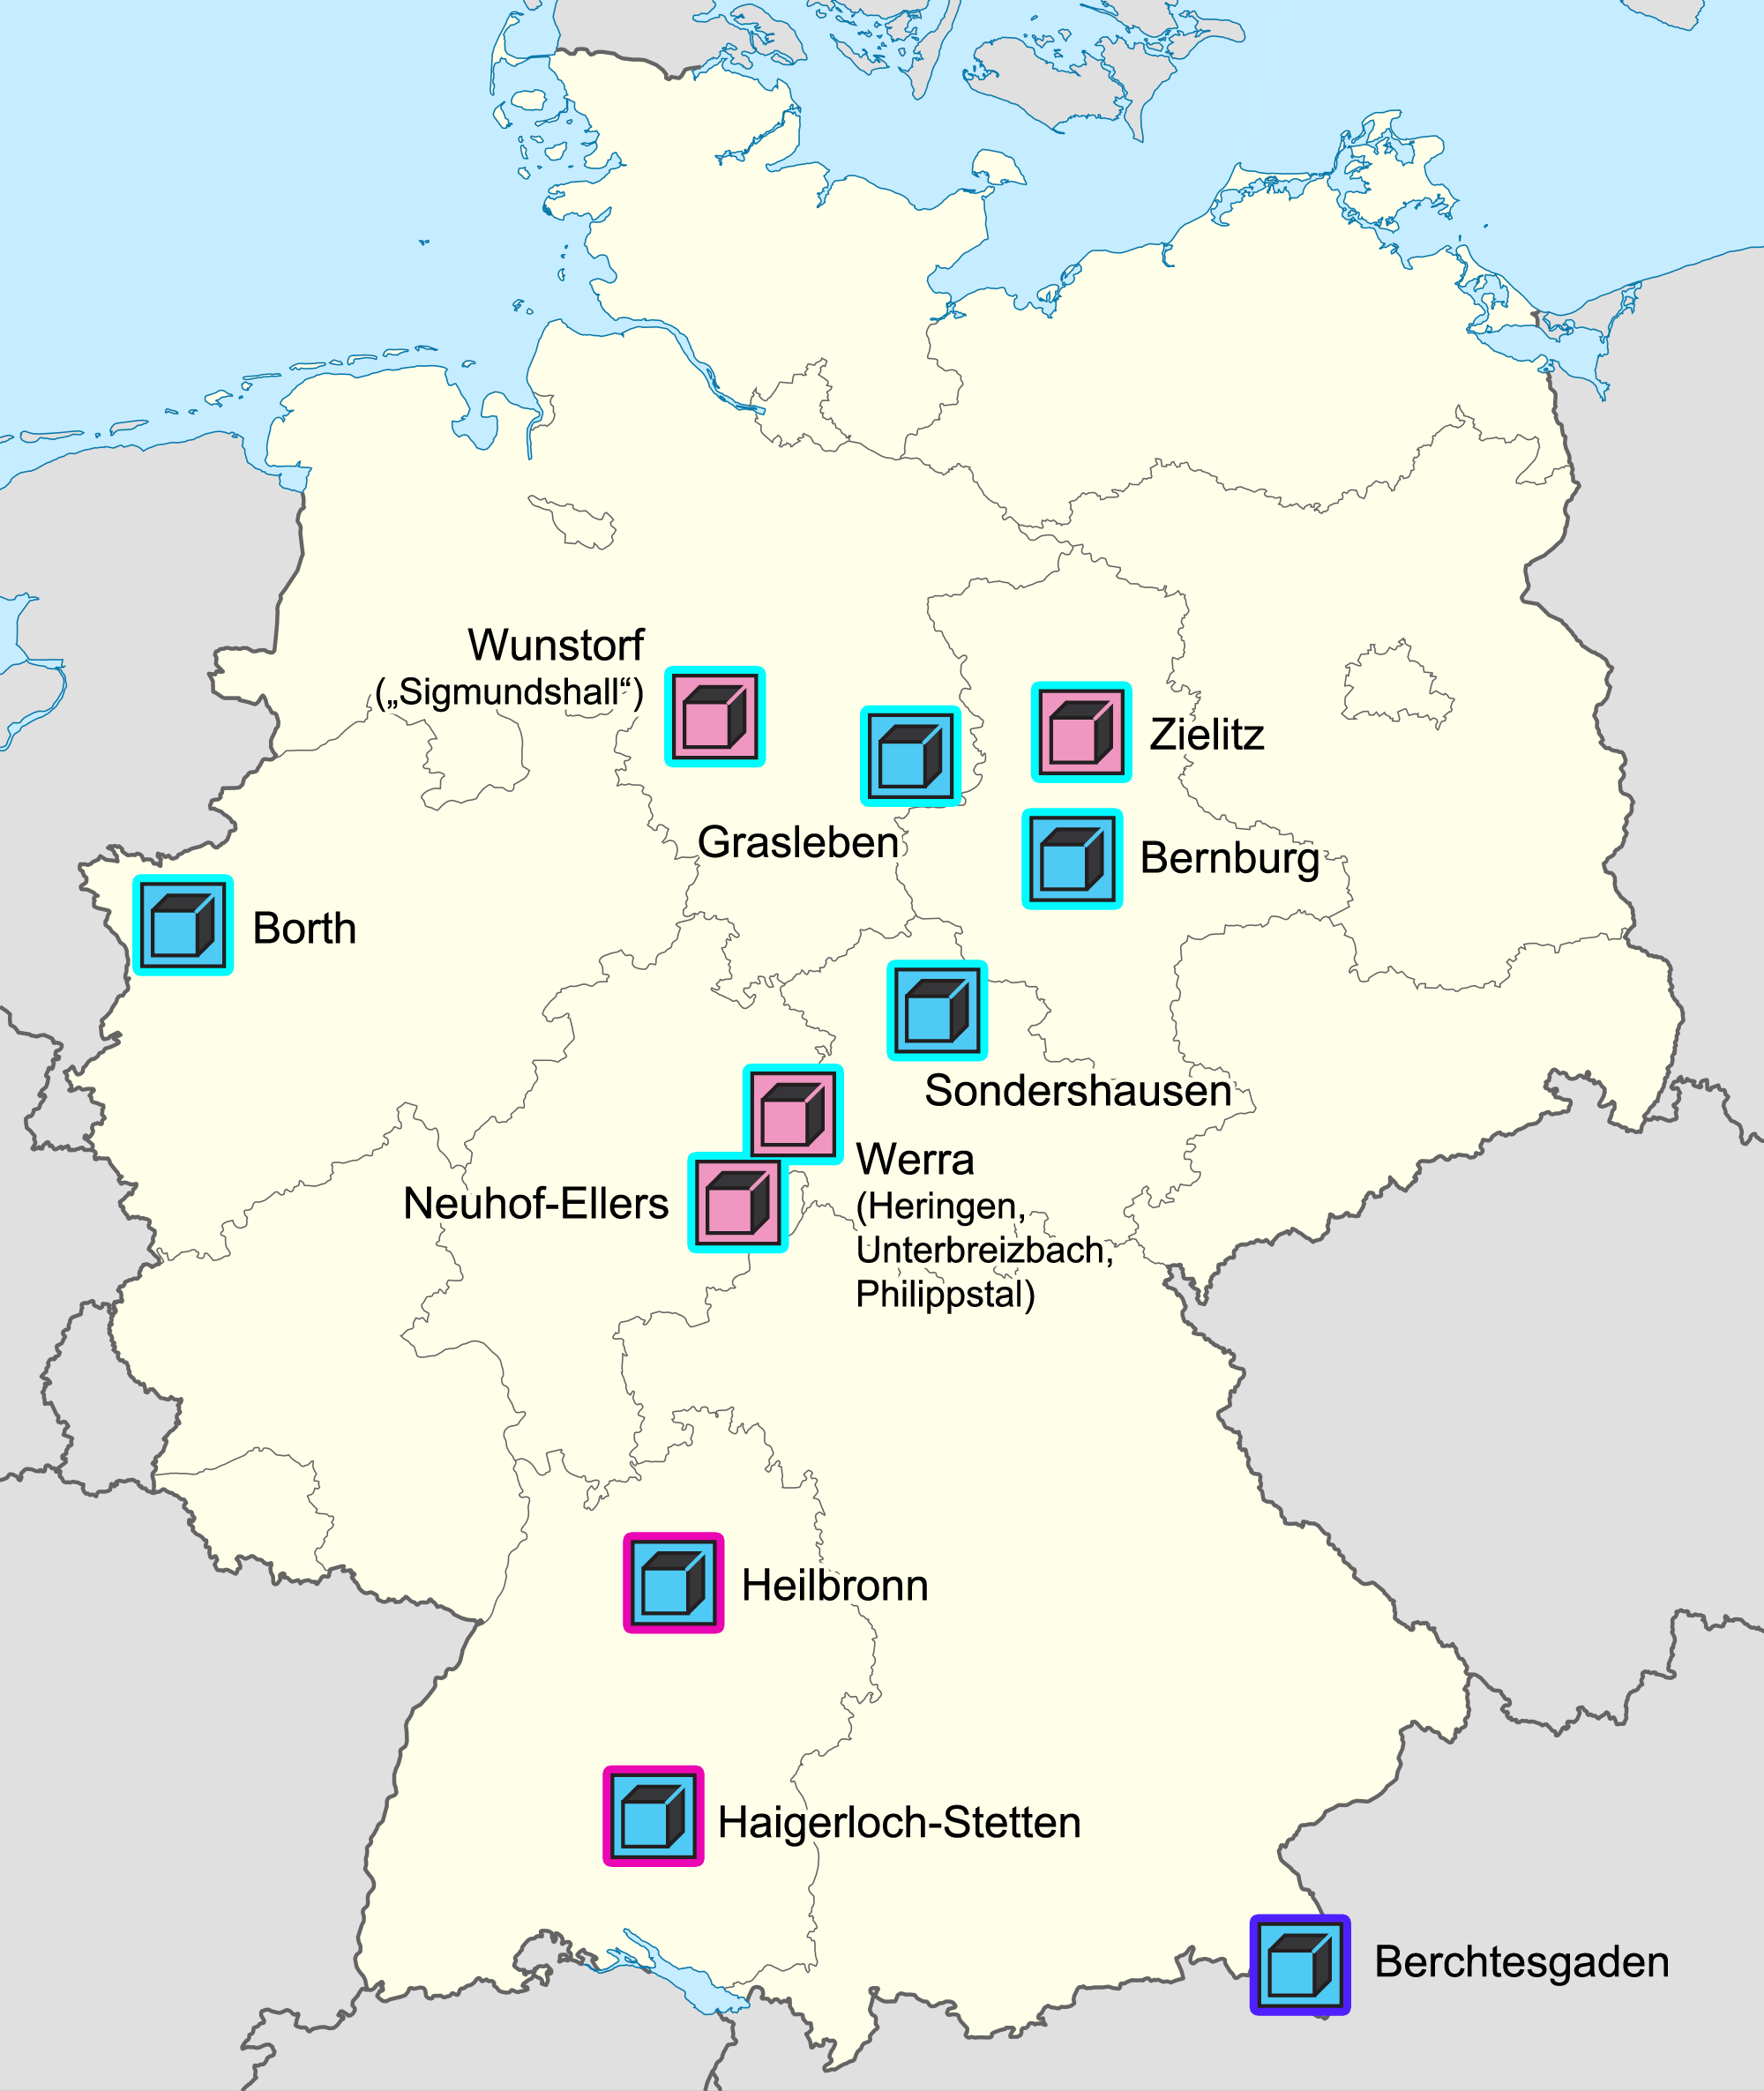 salzlagerstätten in deutschland karte Salzgewinnung Wikipedia salzlagerstätten in deutschland karte